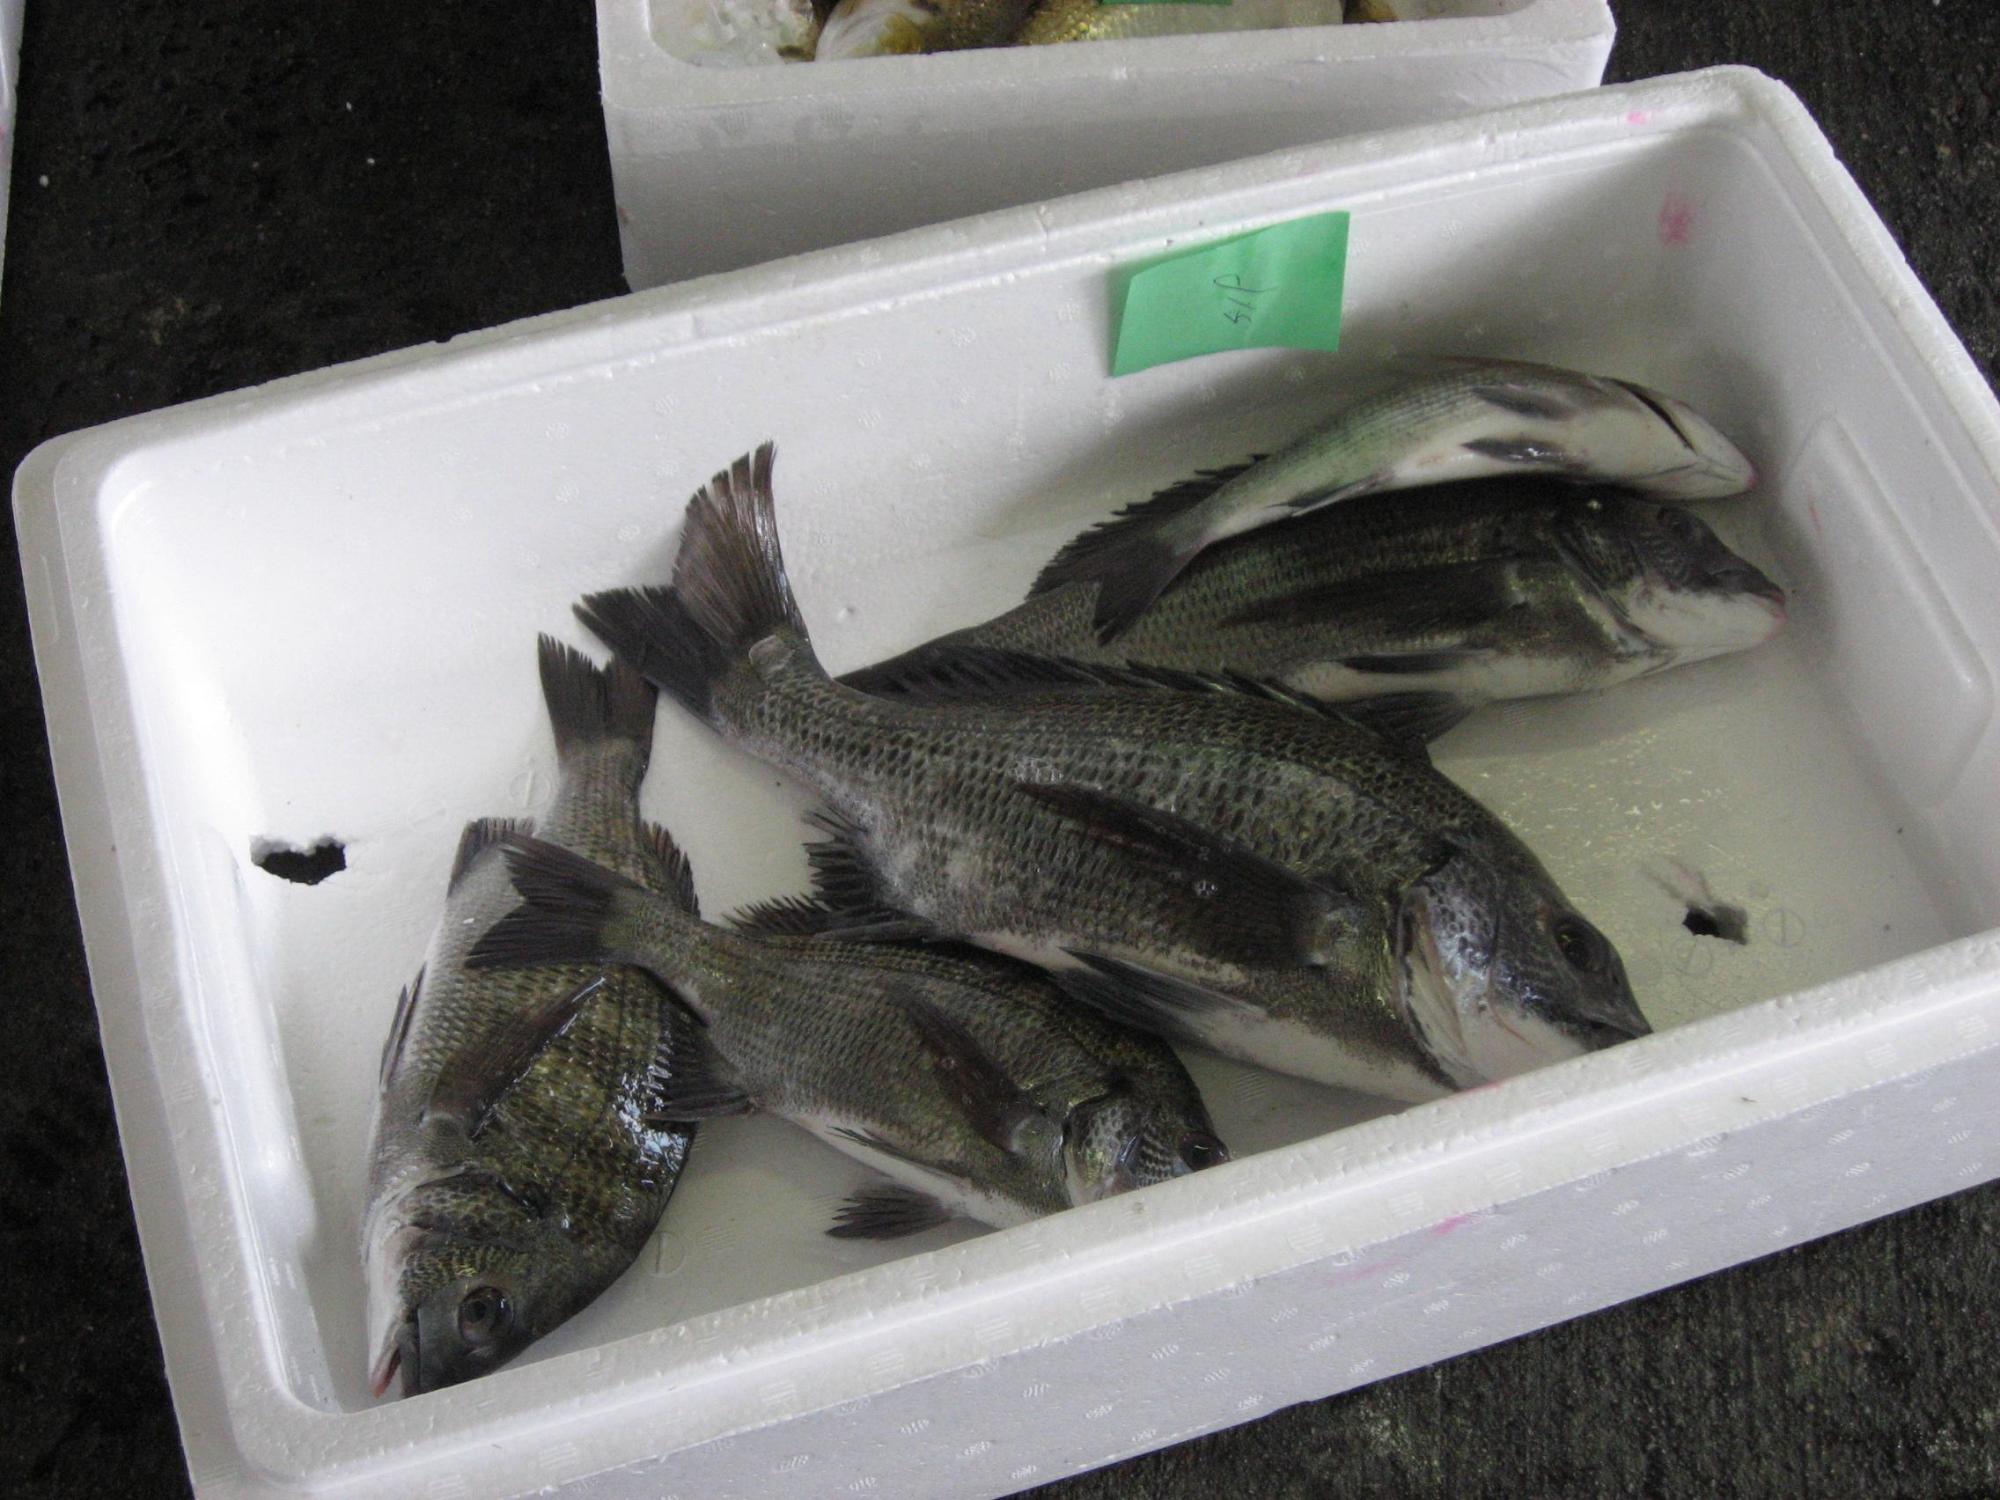 発泡スチロールの箱に入っている5匹の魚の写真